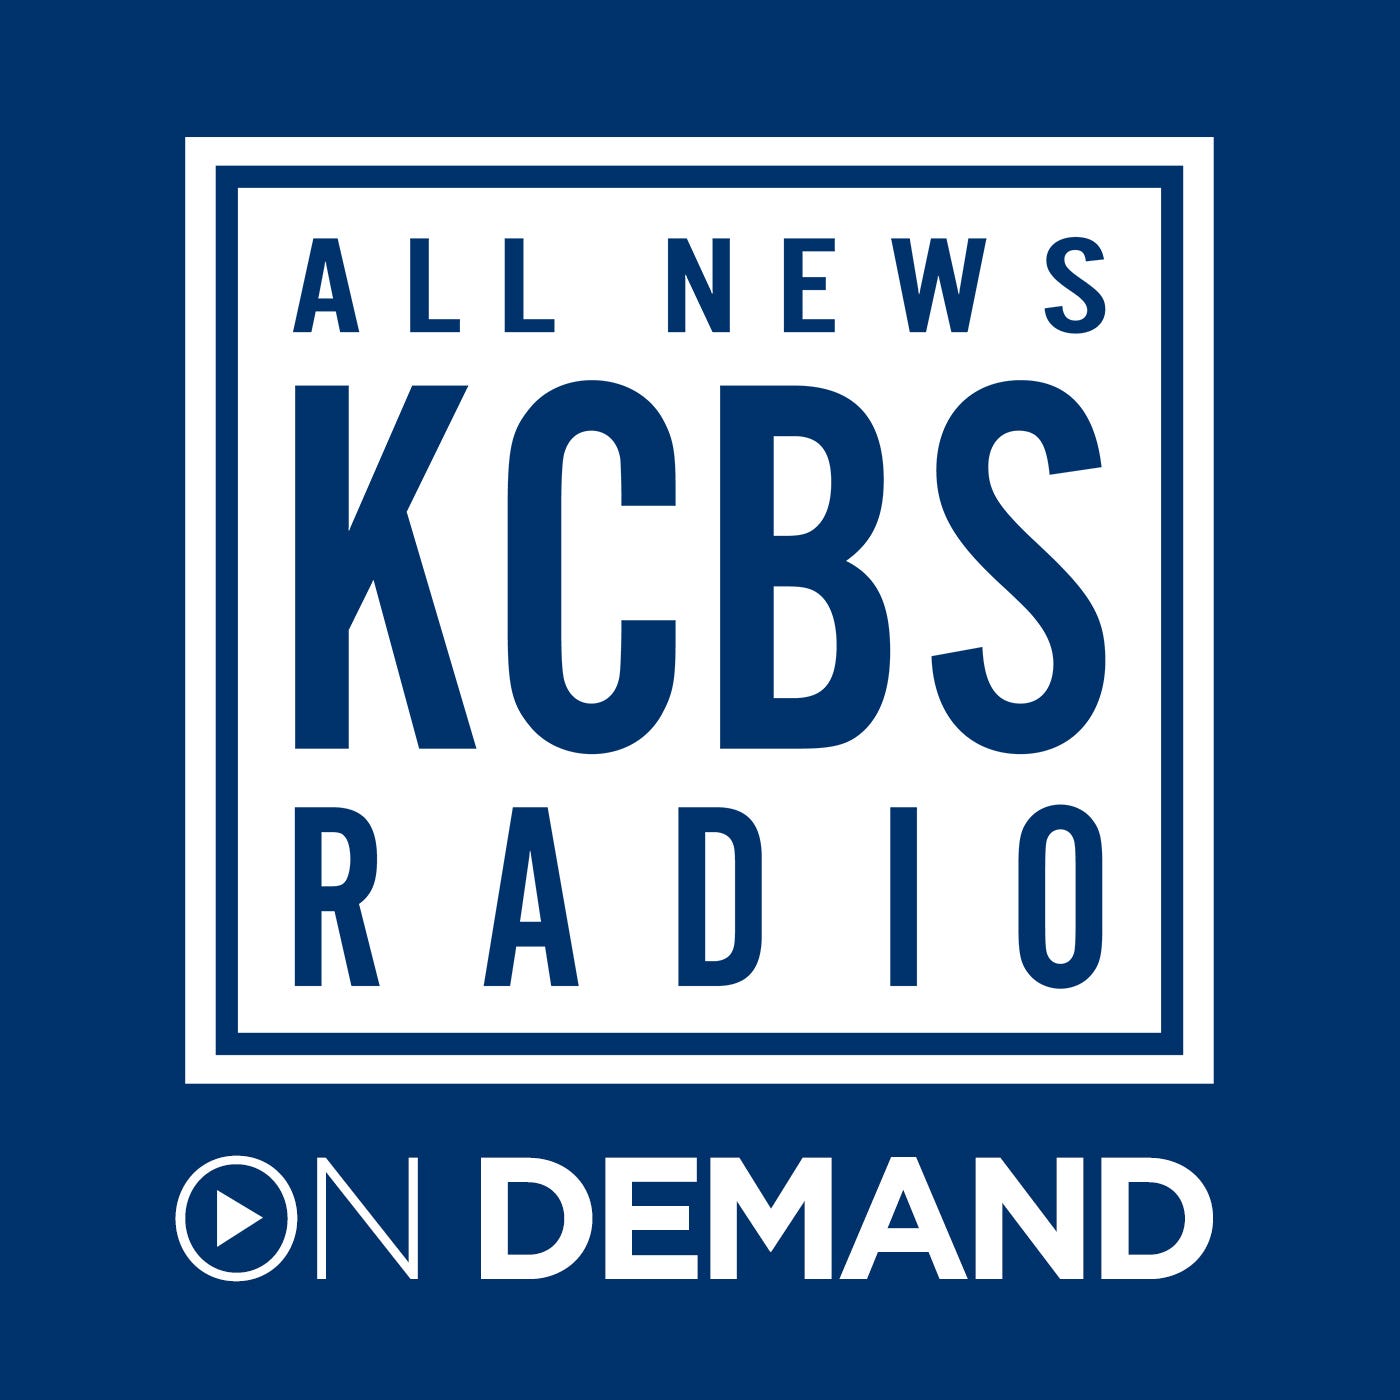 Impeach Barr And Mnuchin, Not Just Trump, Swalwell Tells KCBS Radio